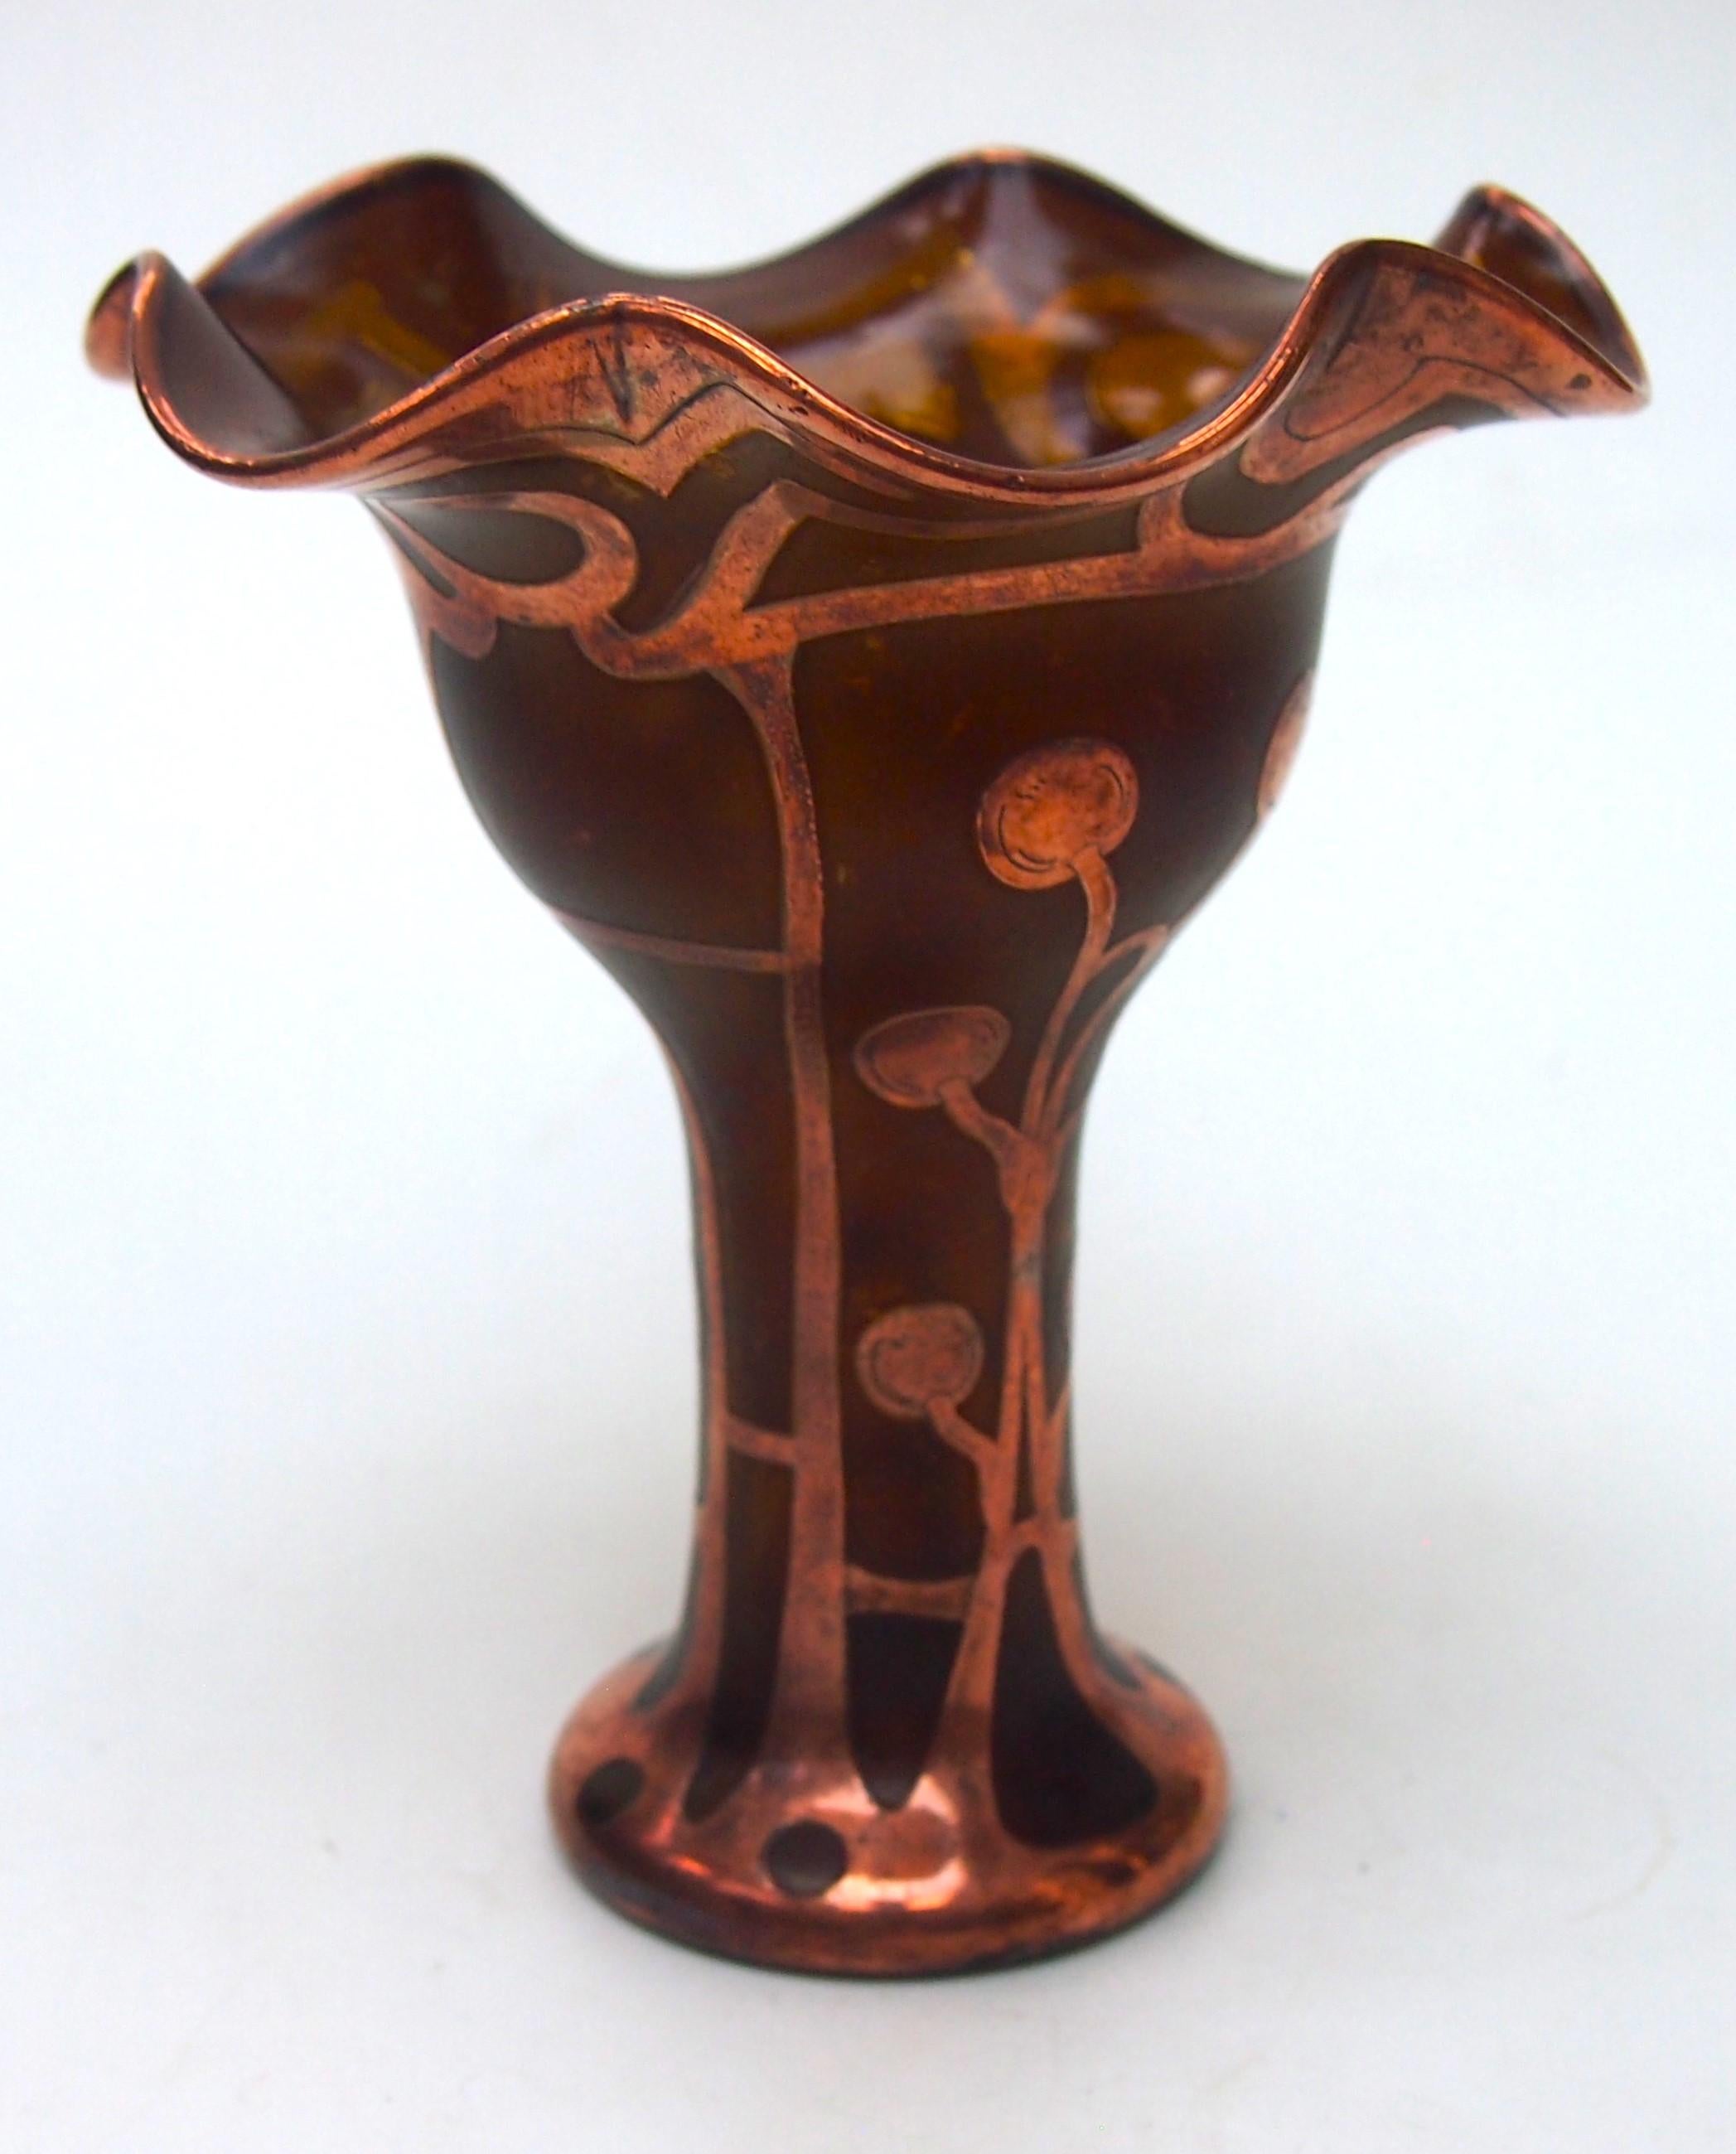 Vase en verre recouvert de cuivre de Carl Goldberg (de Haida) dans le style Jugendstil (Art nouveau allemand) - Le verre a une finition mouchetée d'ambre qui le fait ressembler à du métal. Le vase a un sommet ondulé et évasé et le motif en cuivre